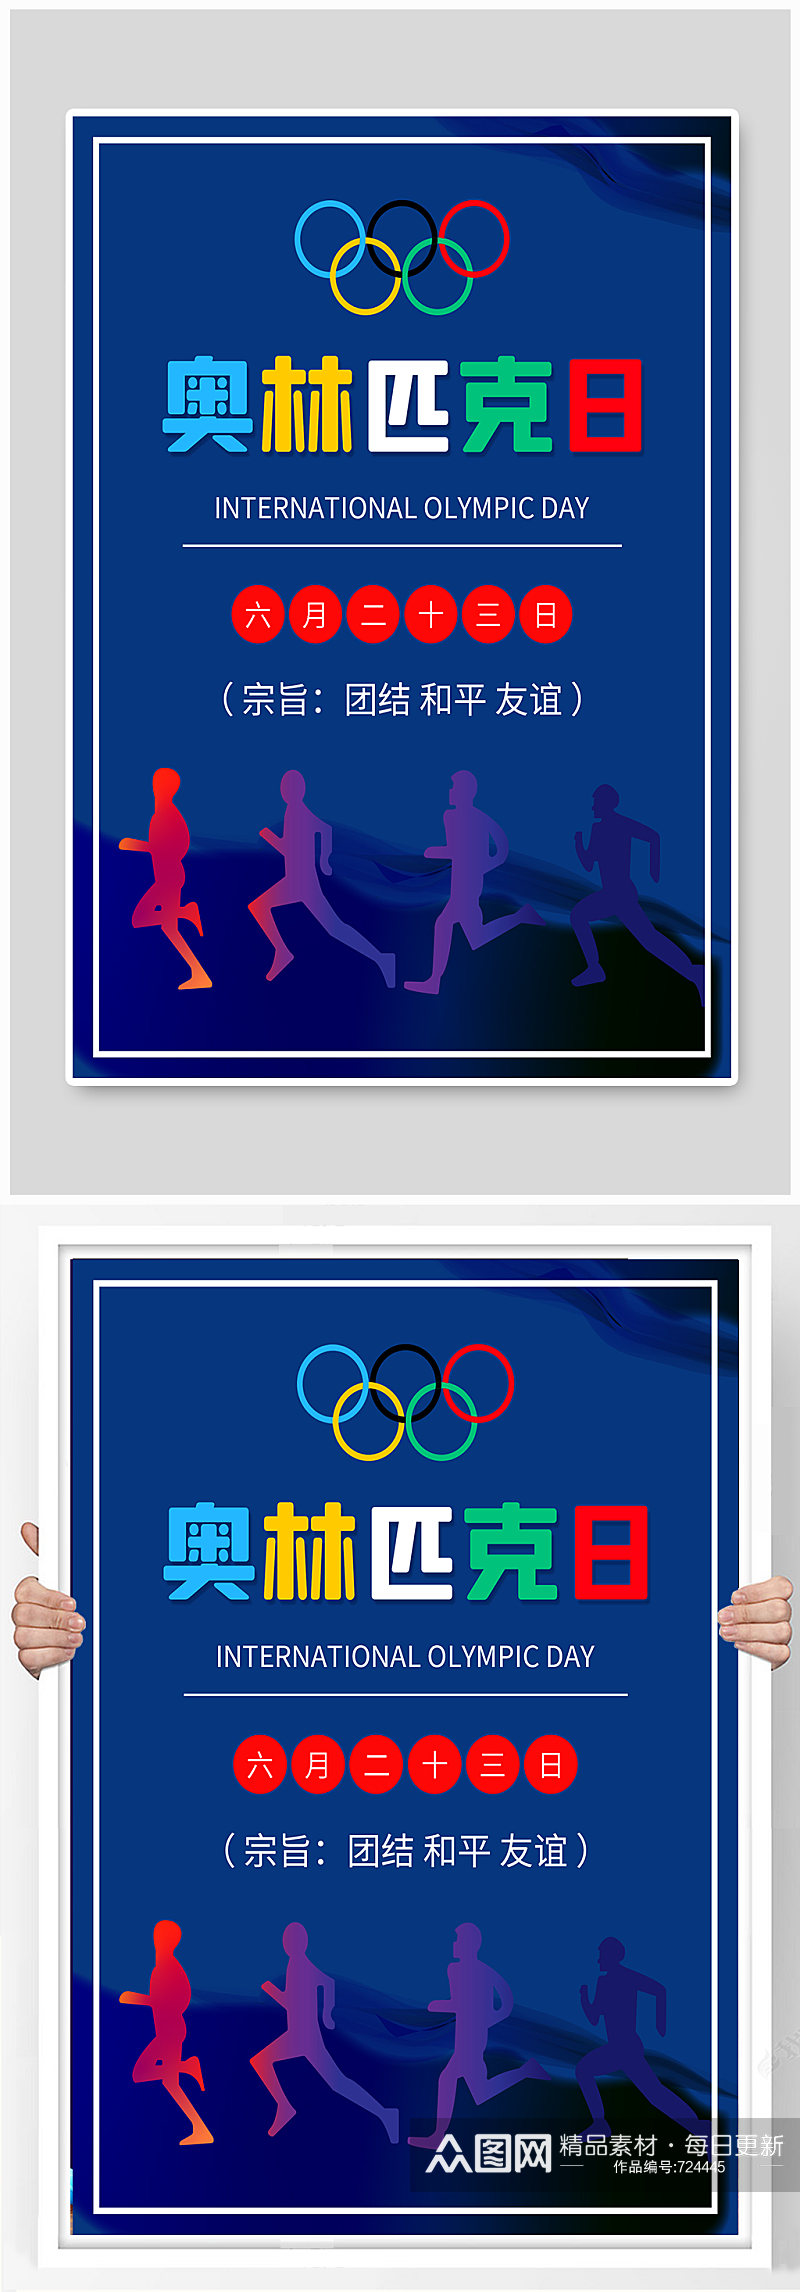 国际奥林匹克日火炬手体育运动海报素材